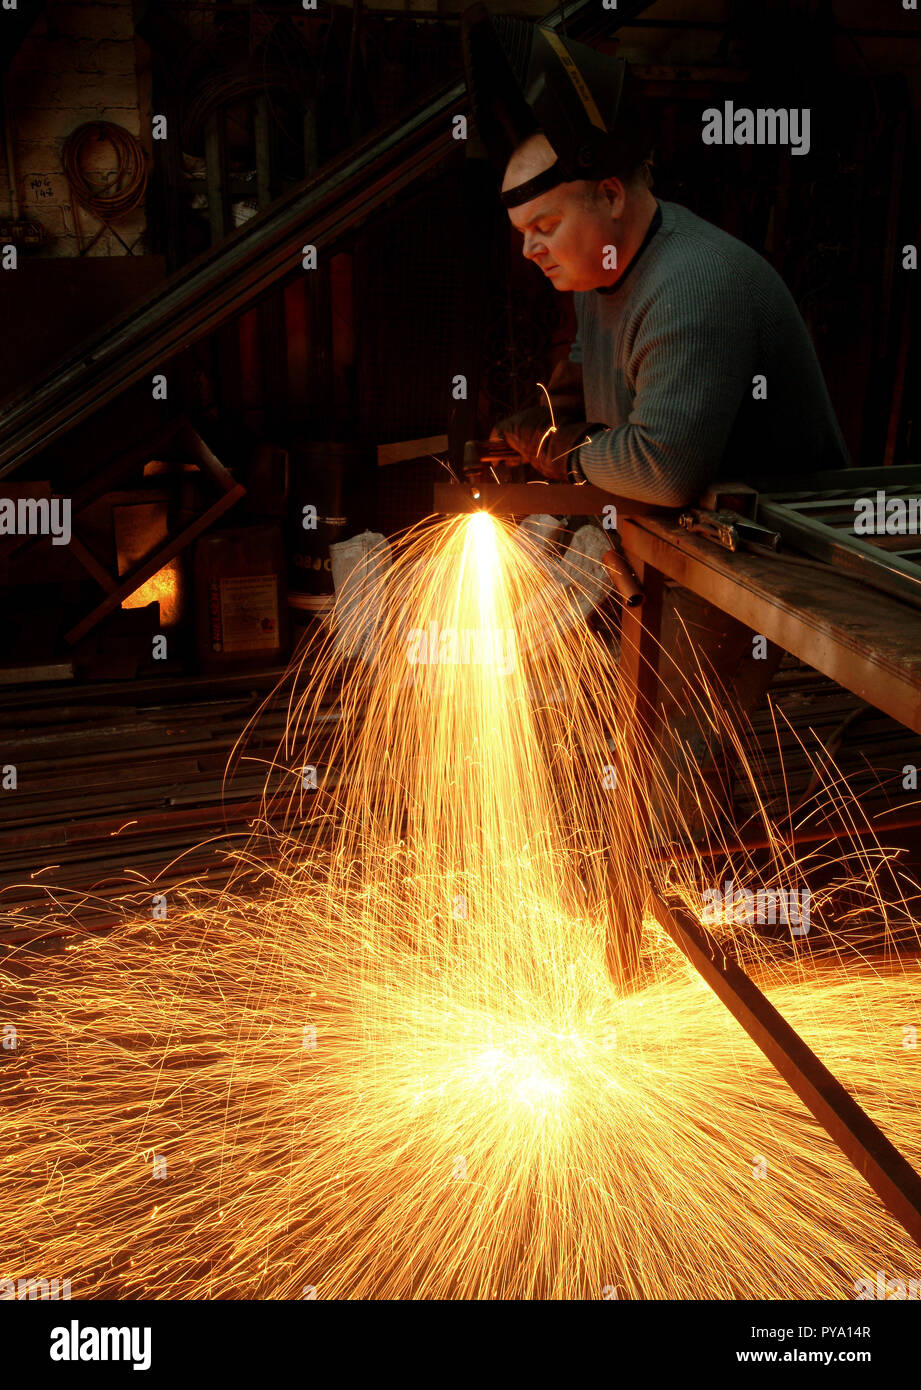 Der Metallarbeiter erzeugt in seiner Werkstatt einen hereinbrausenden Funkenregen Als er in seiner Werkstatt in Schottland Metallarbeiten fertigt Stockfoto